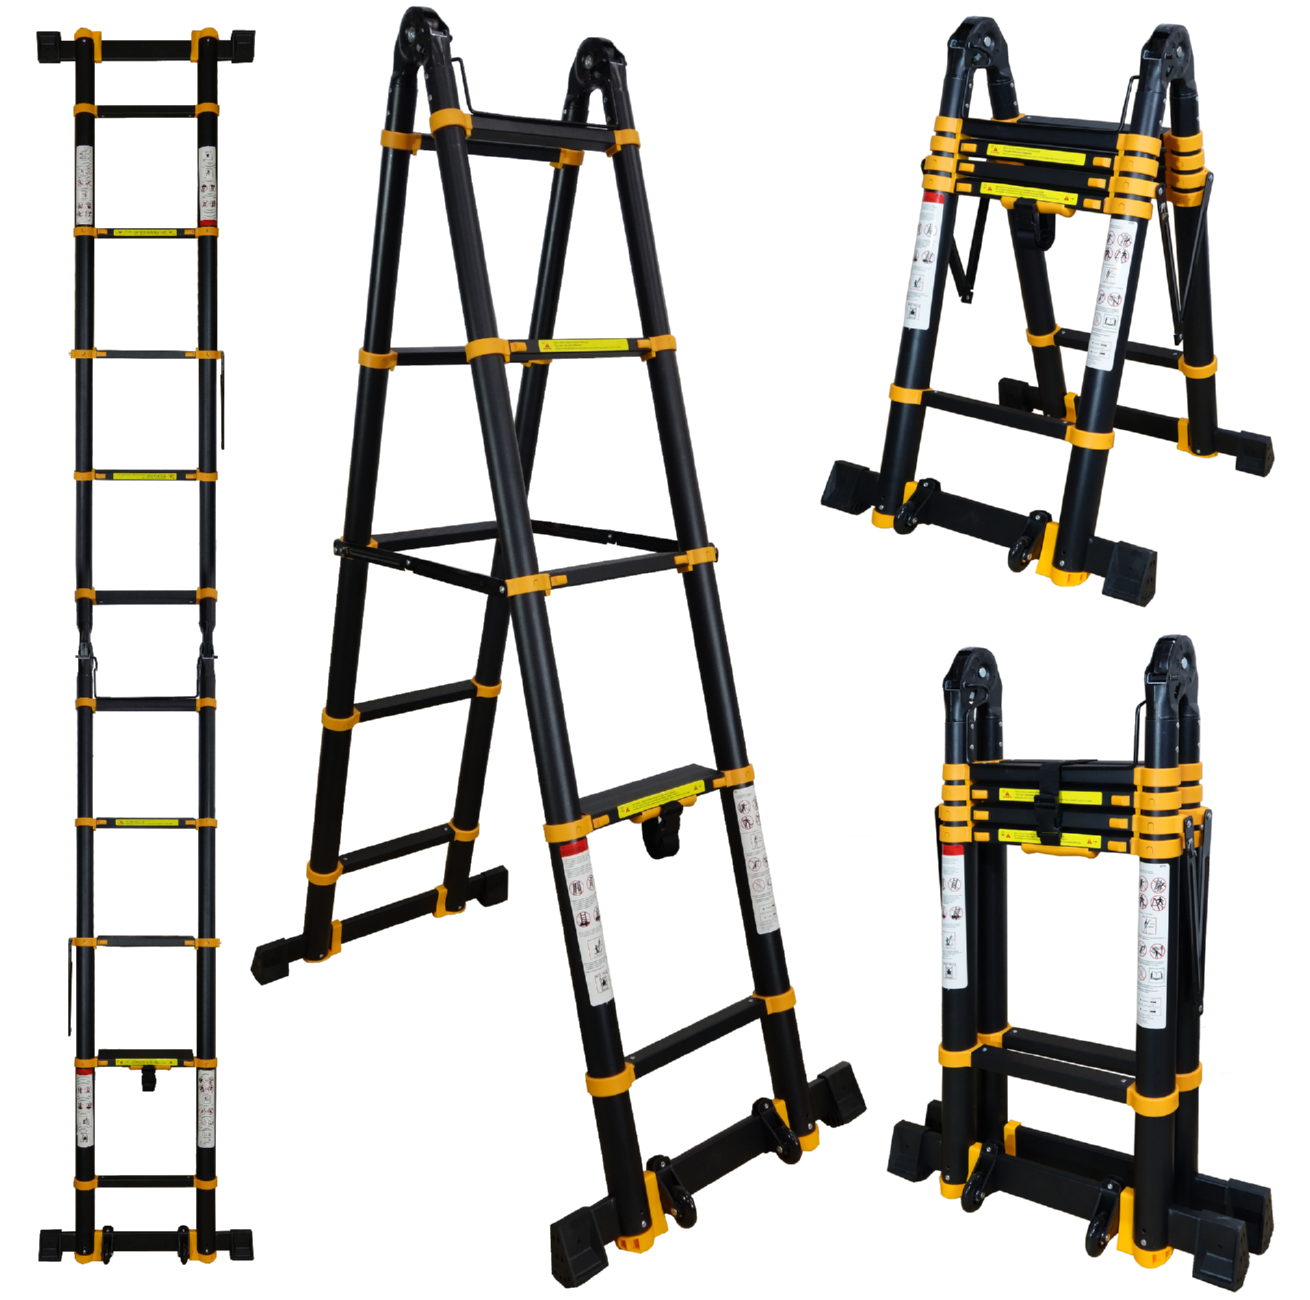 Лестница Raybe RM420 1074005 координационная лестница 6 м толщина 4 мм желтый